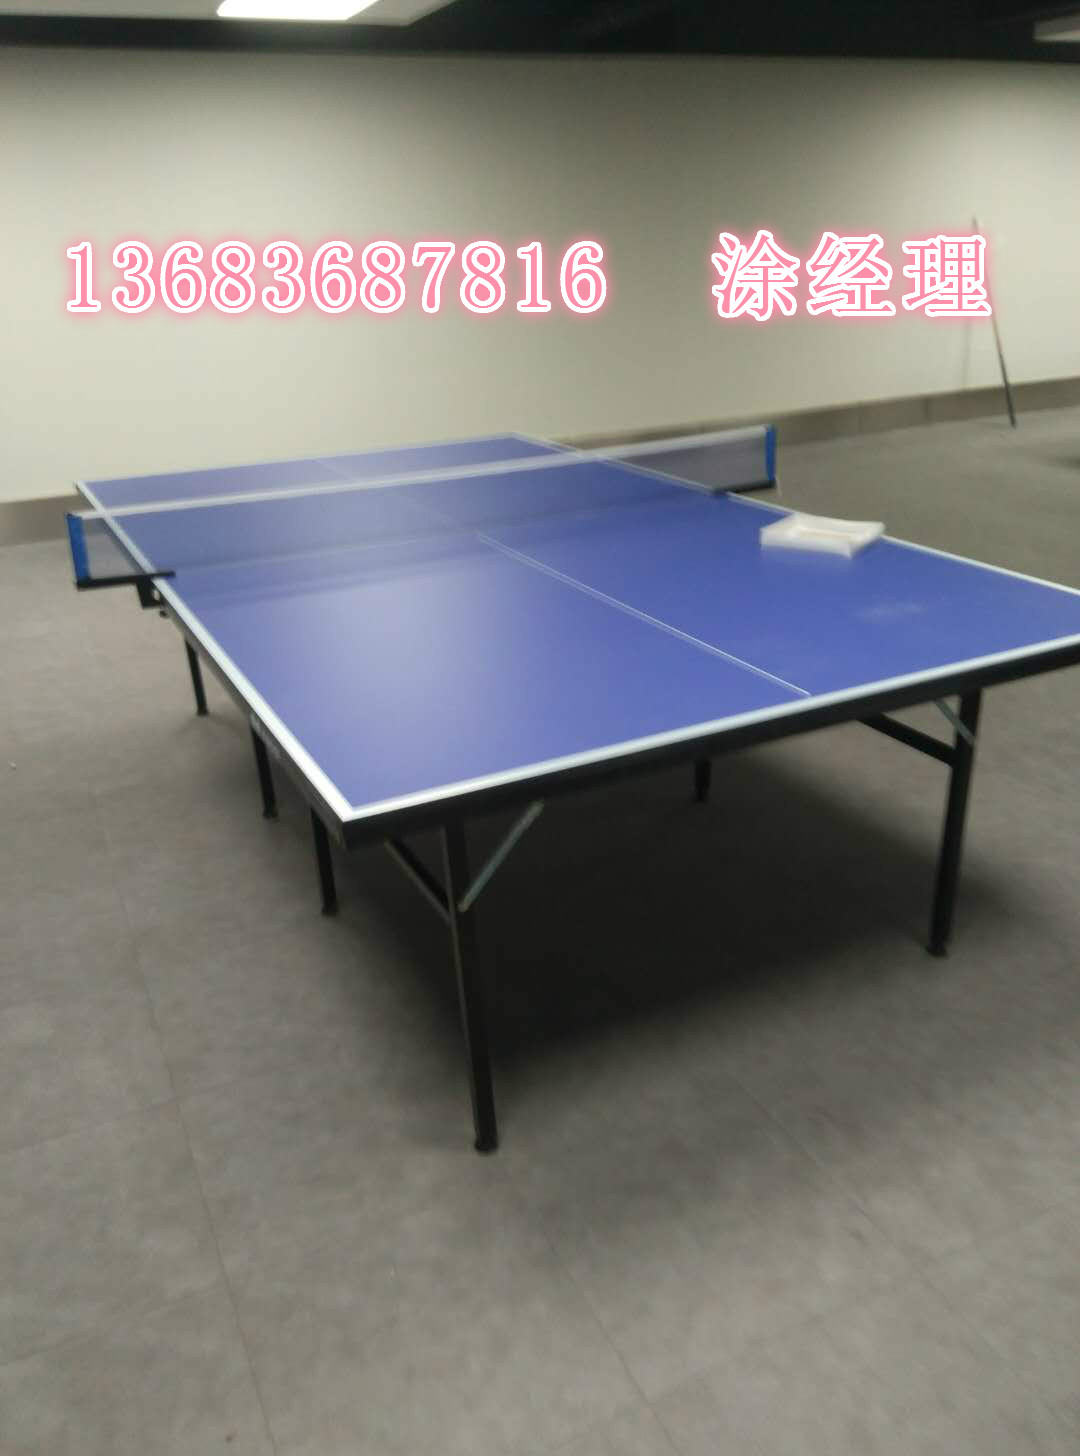 供应乒乓球桌 北京乒乓球桌厂家 乒乓球桌厂家直销 乒乓球桌热线电图片